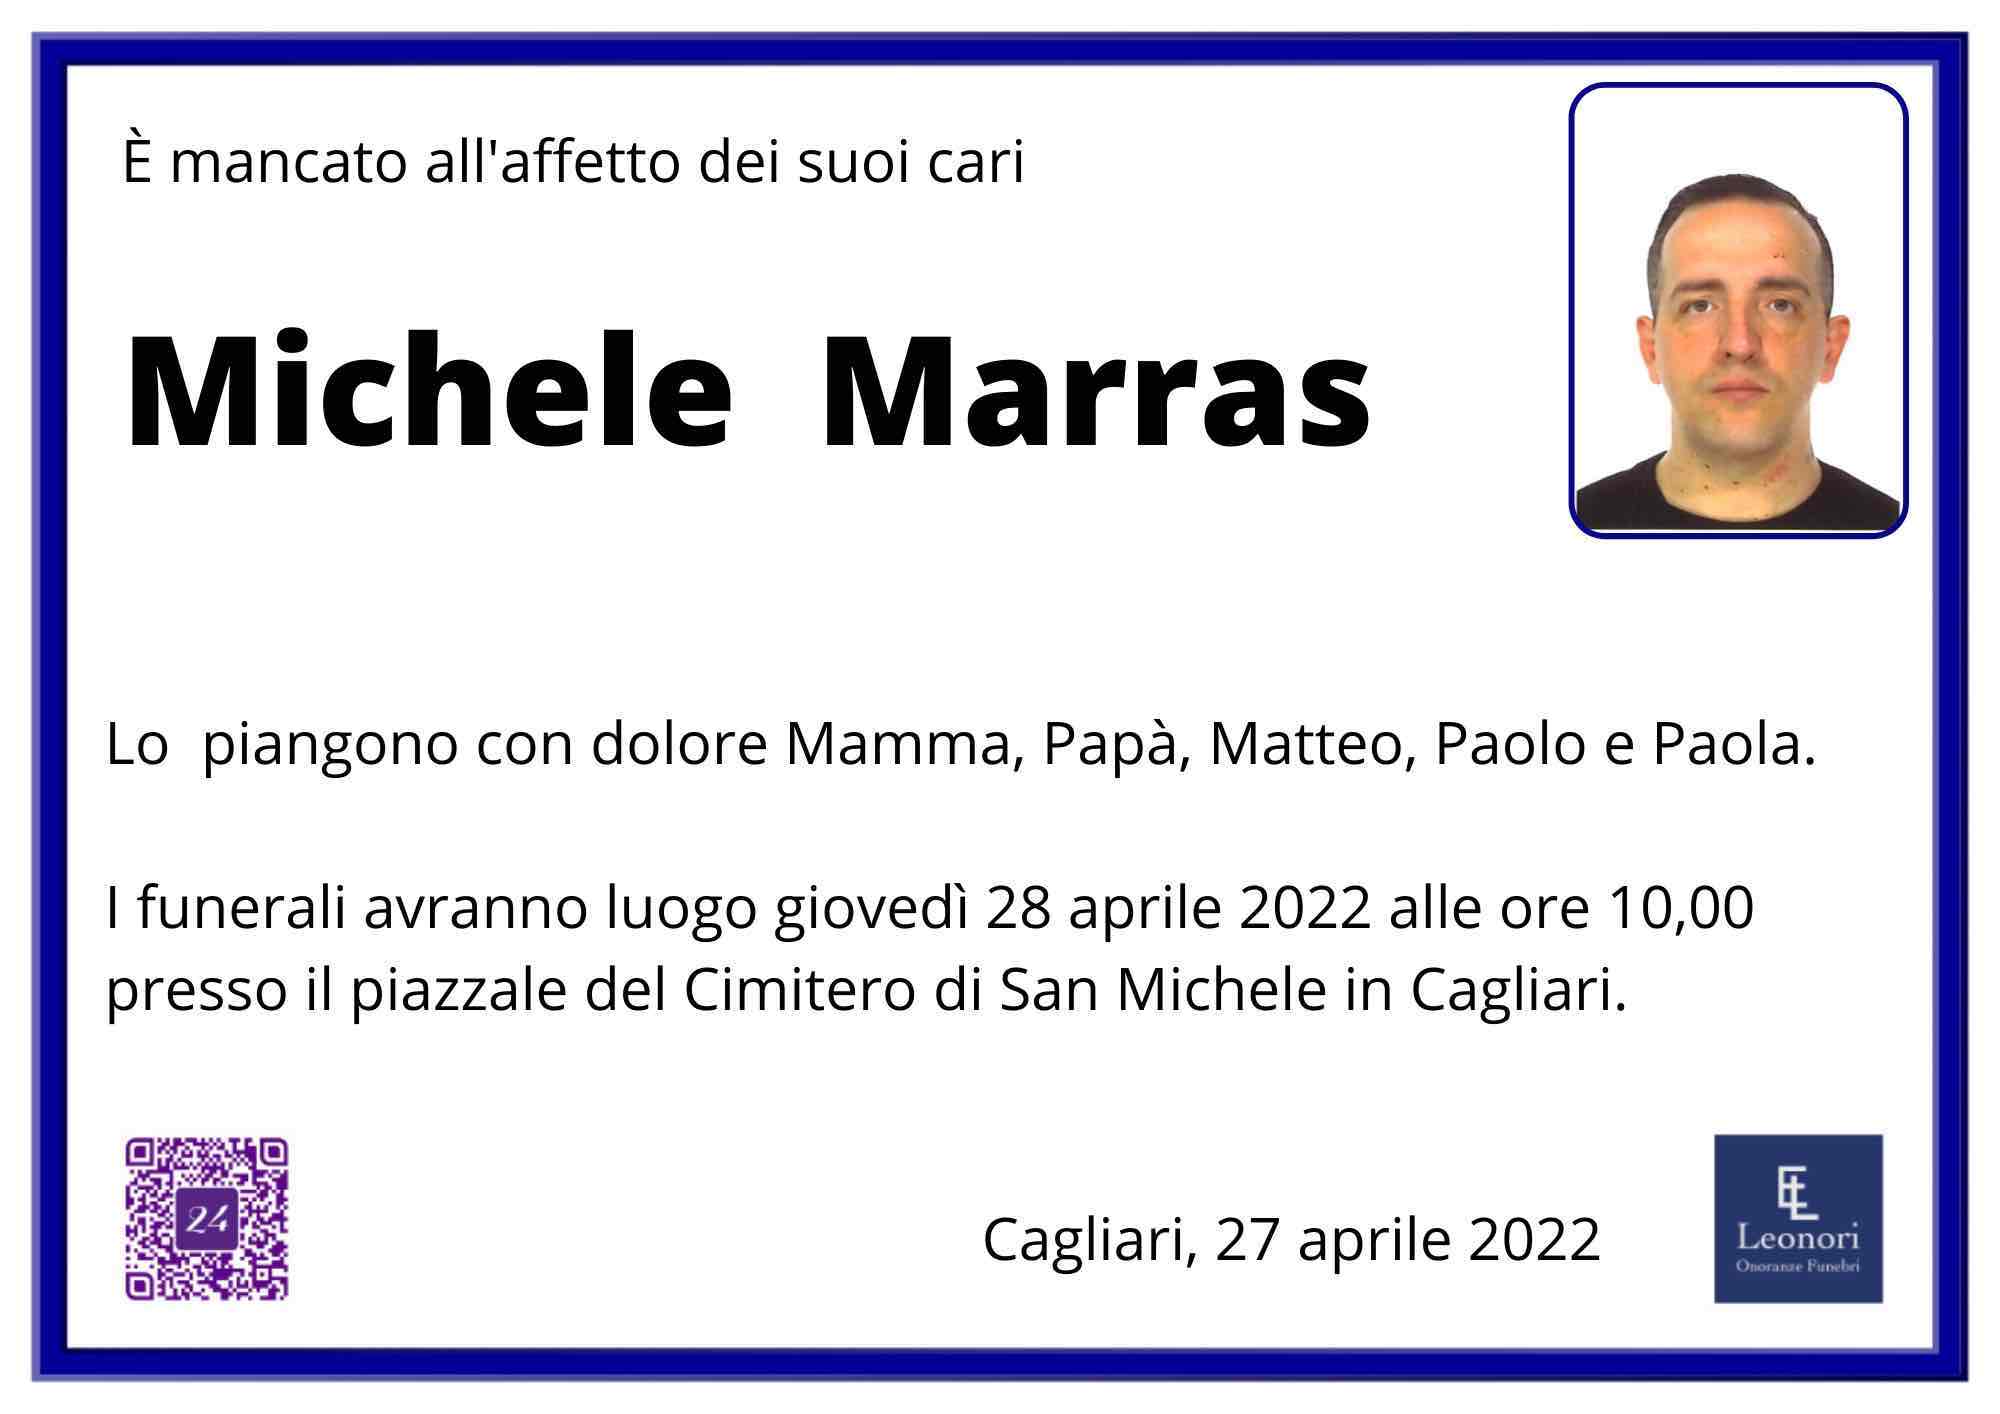 Michele Marras